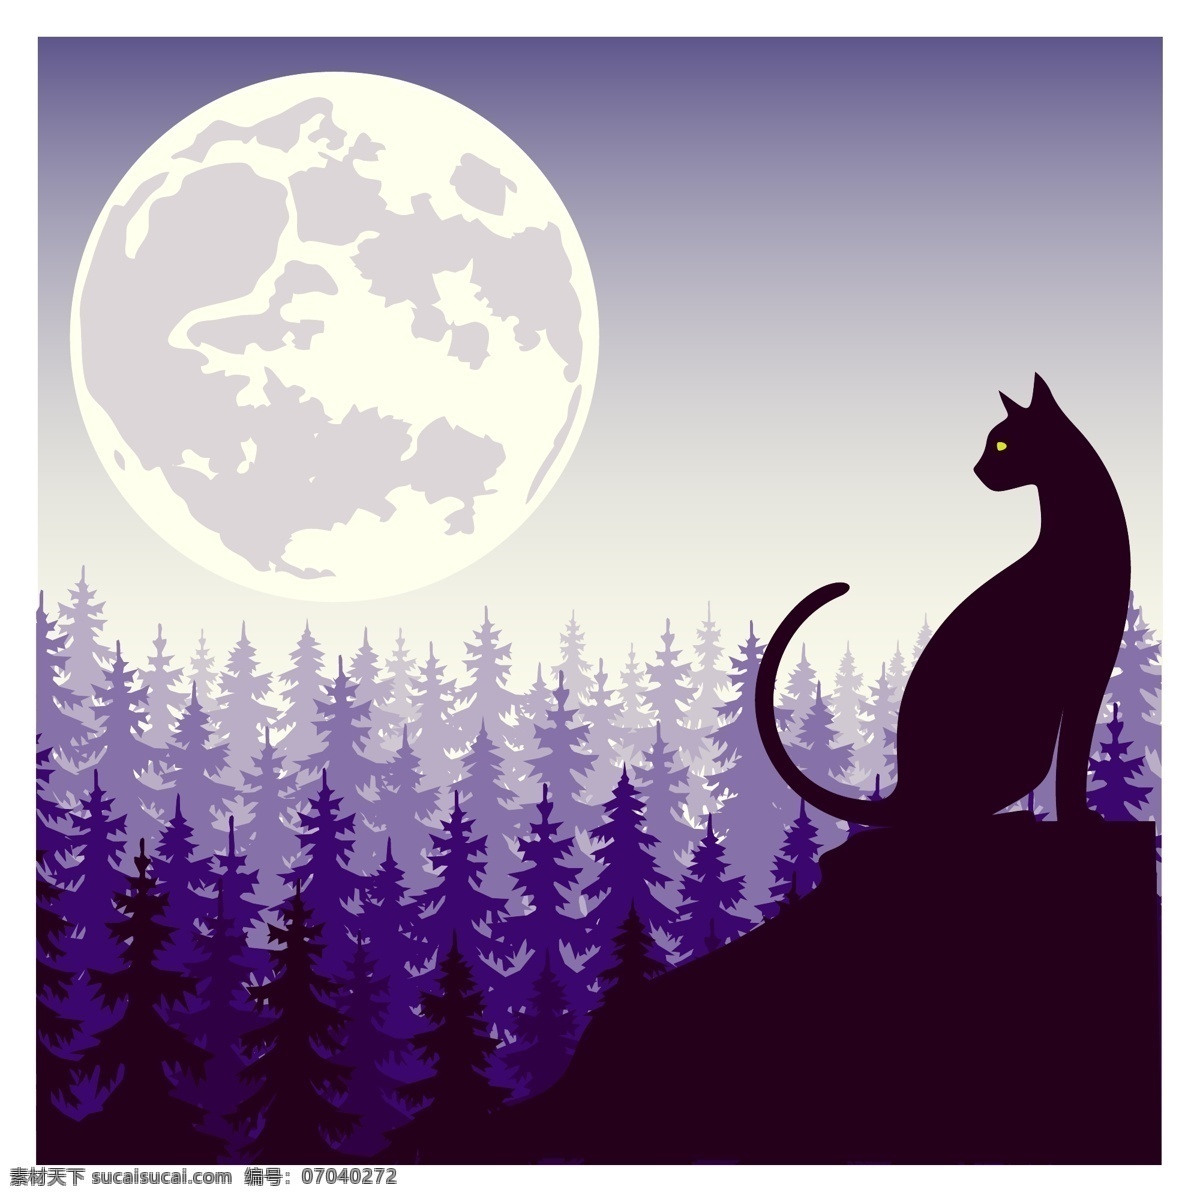 月光下的猫咪 动物 森林 紫色 夜晚 月亮 月光 猫咪 安静